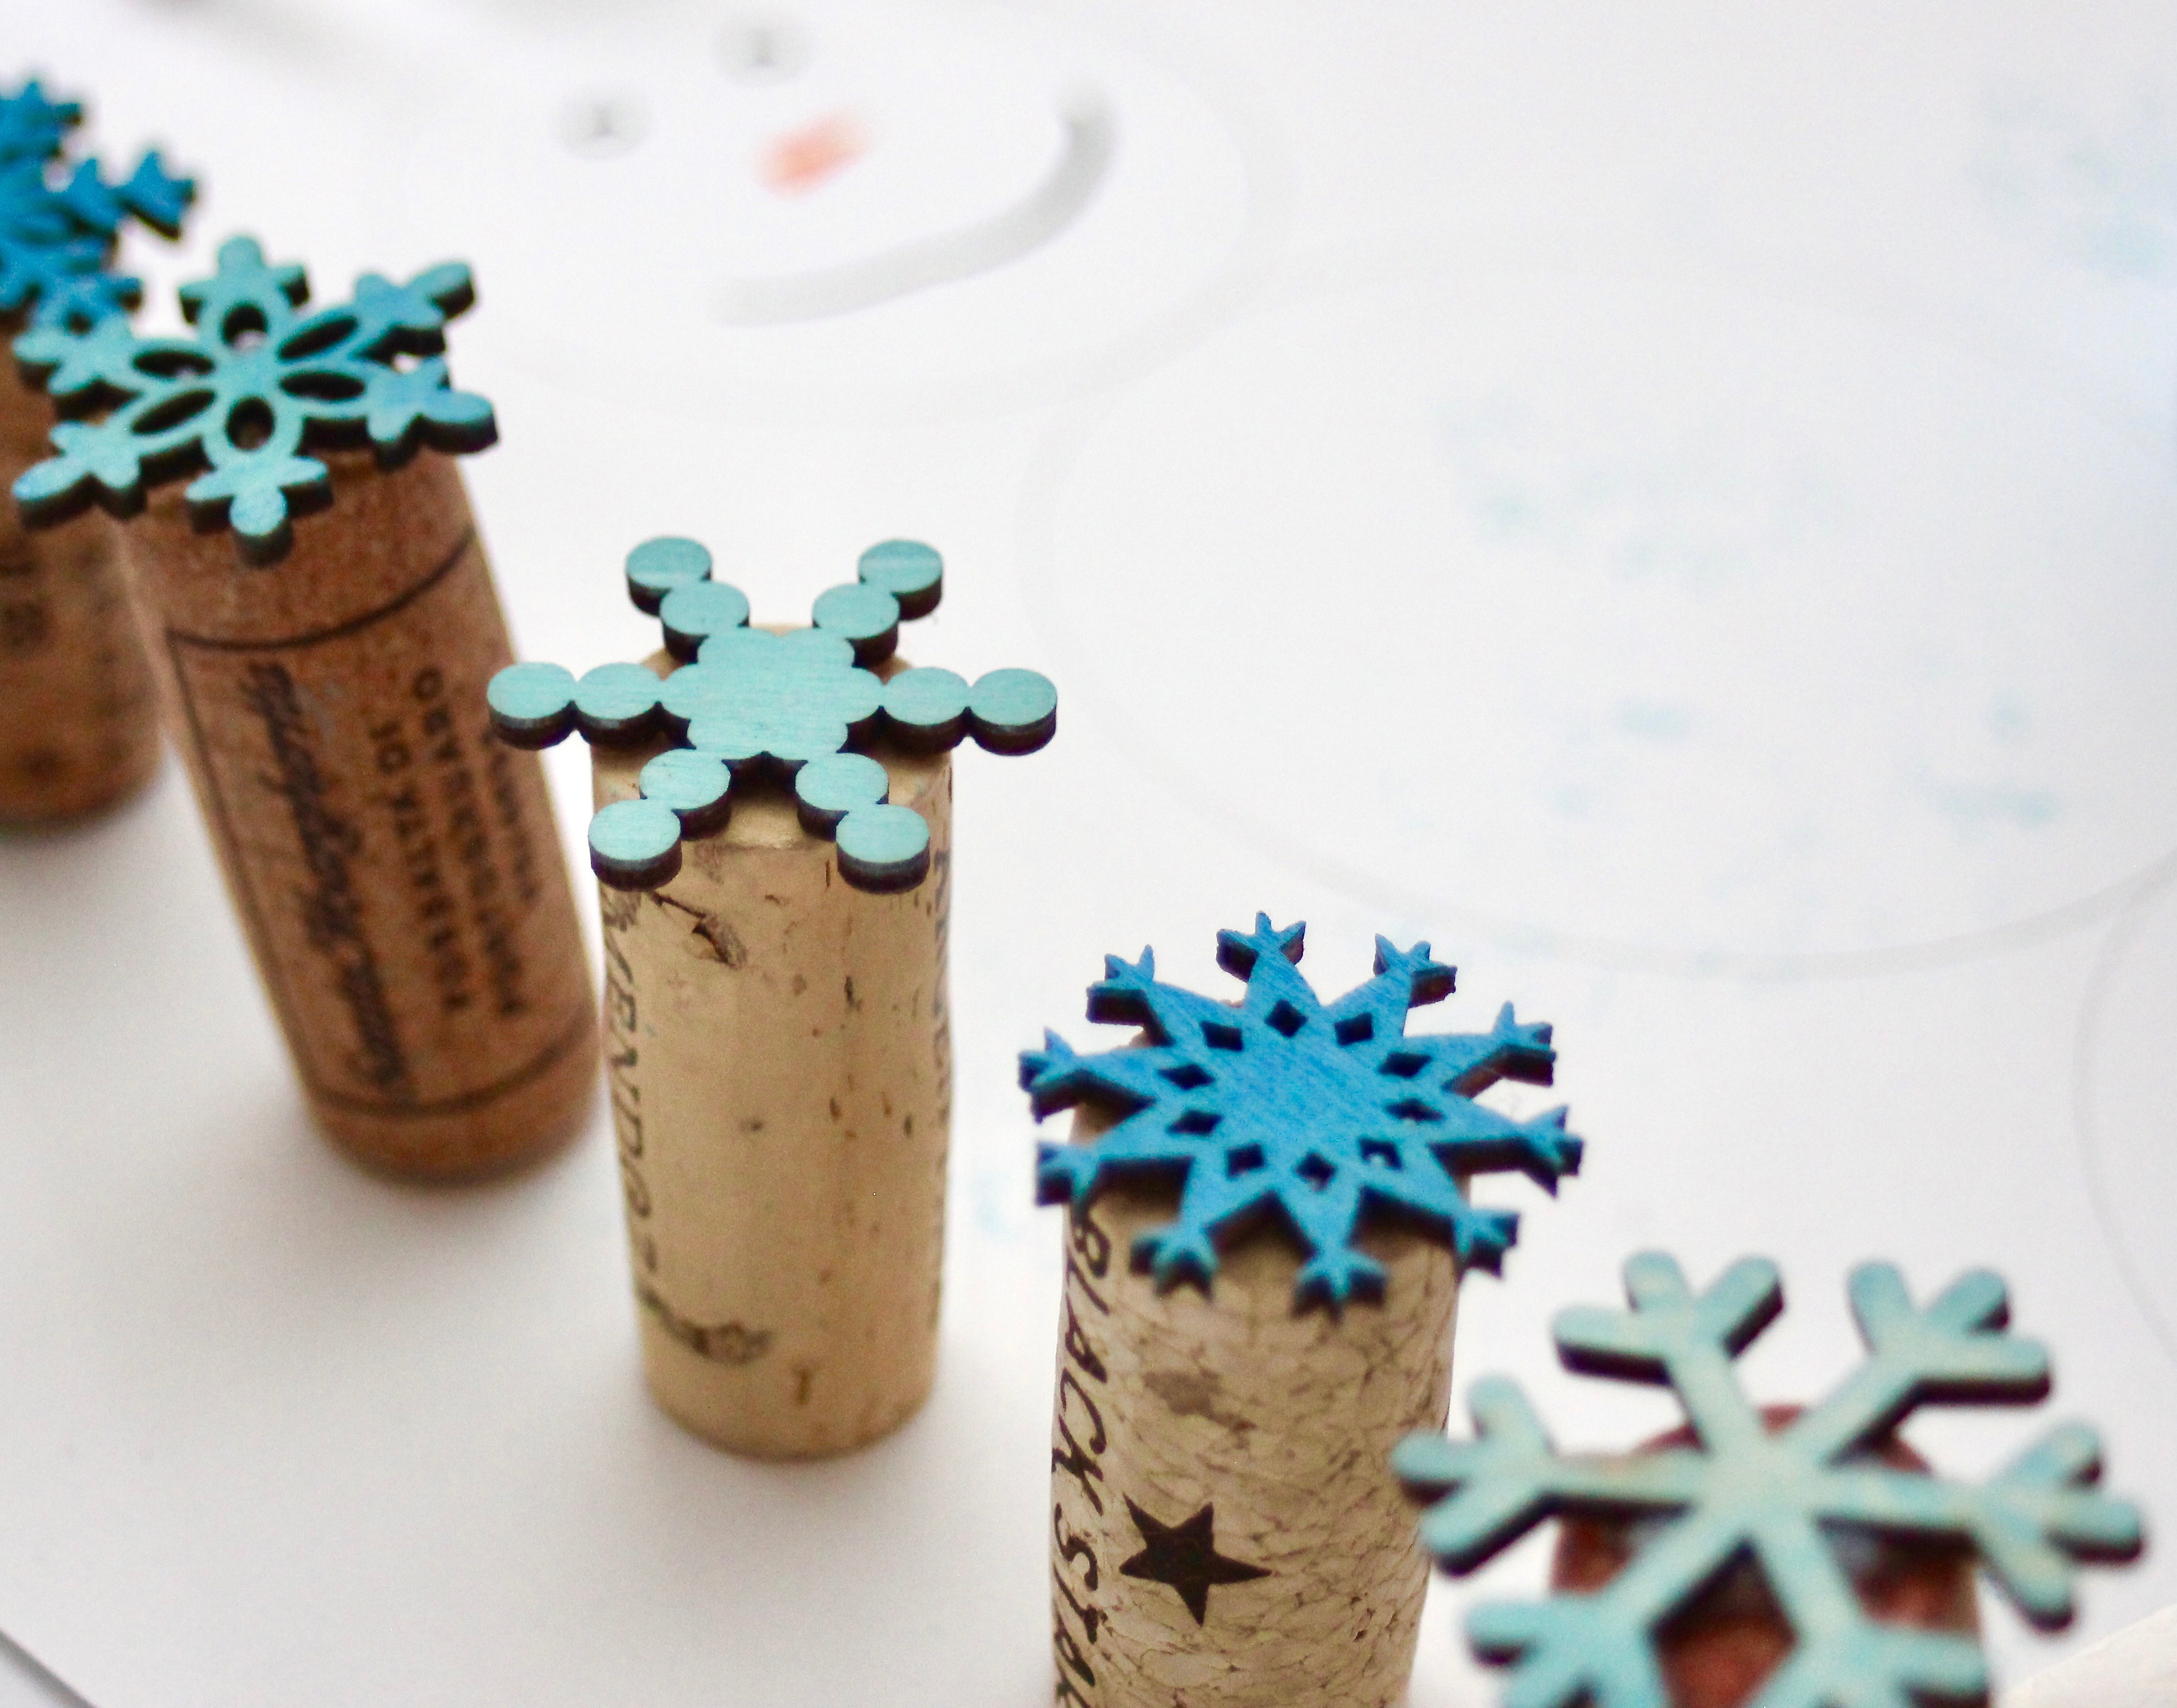 DIY Snowflake Stamps - Kari Skelton